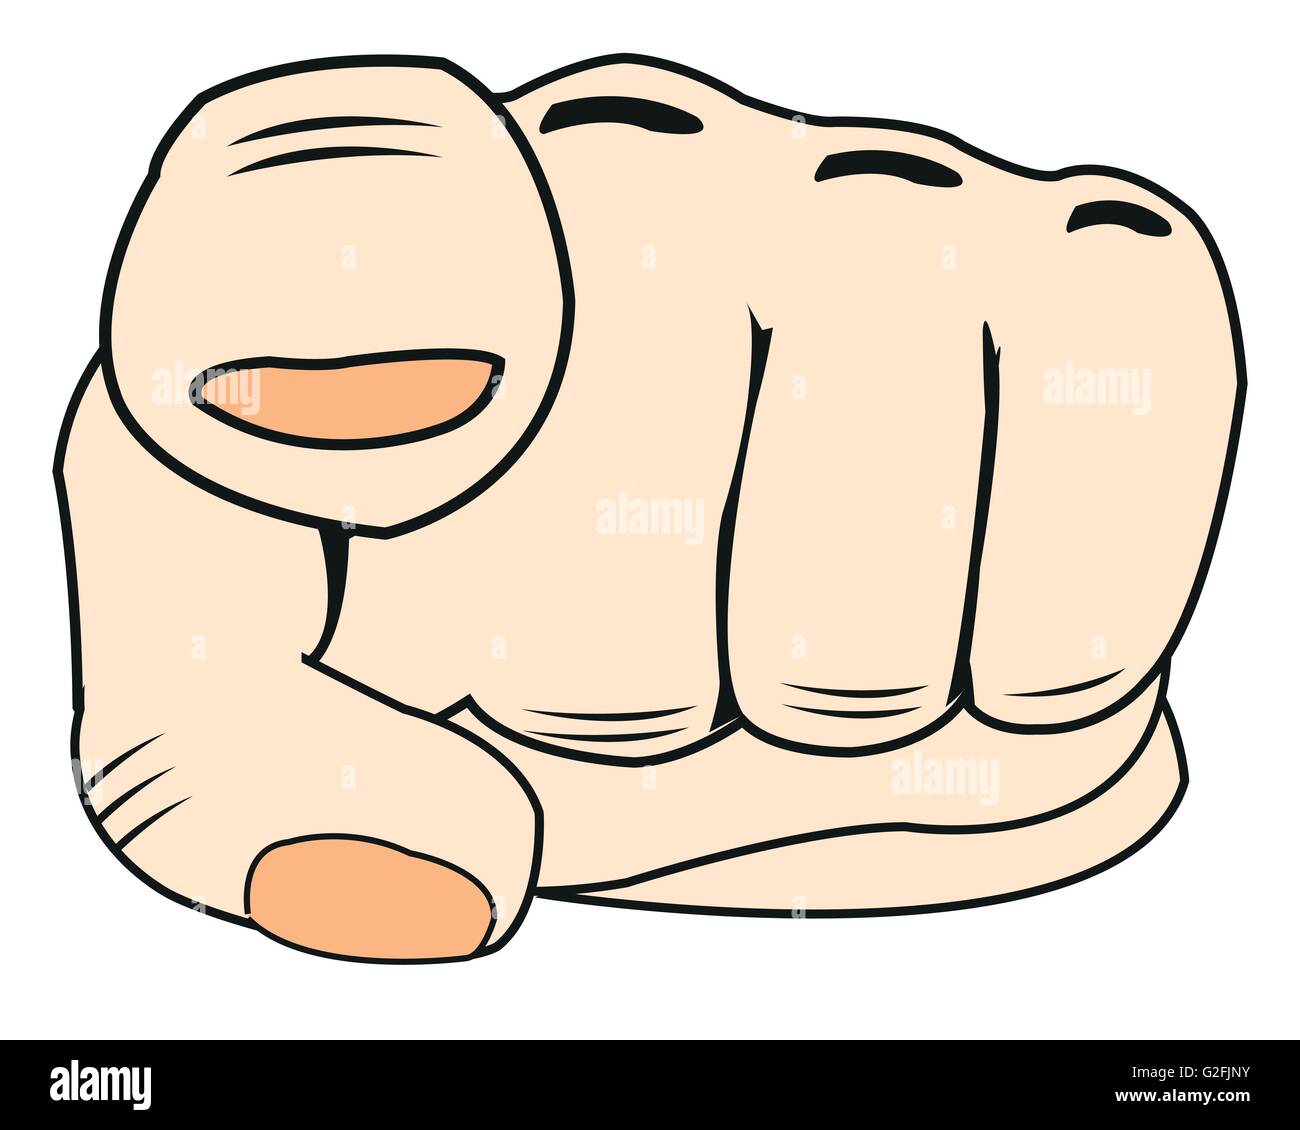 Die Hand der Person mit Zeigefingern. Vektor-illustration Stock Vektor